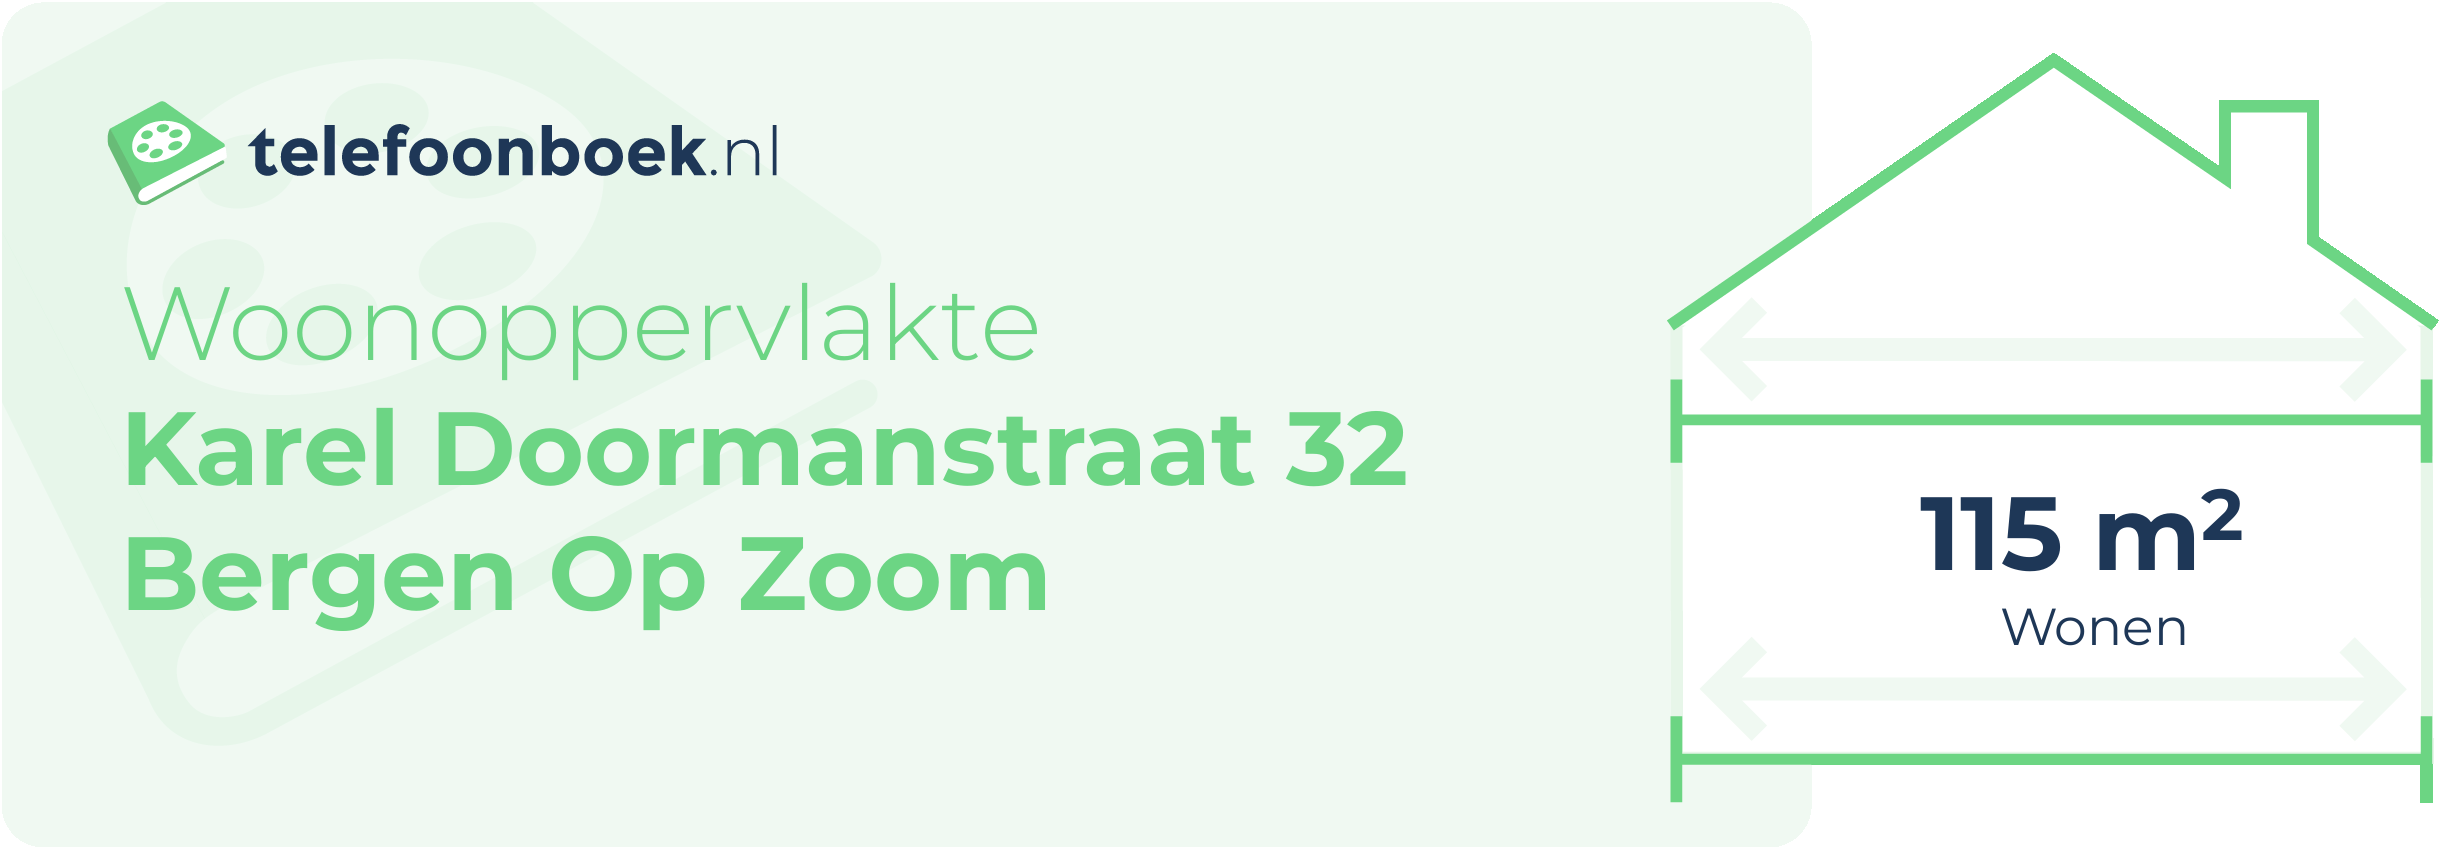 Woonoppervlakte Karel Doormanstraat 32 Bergen Op Zoom